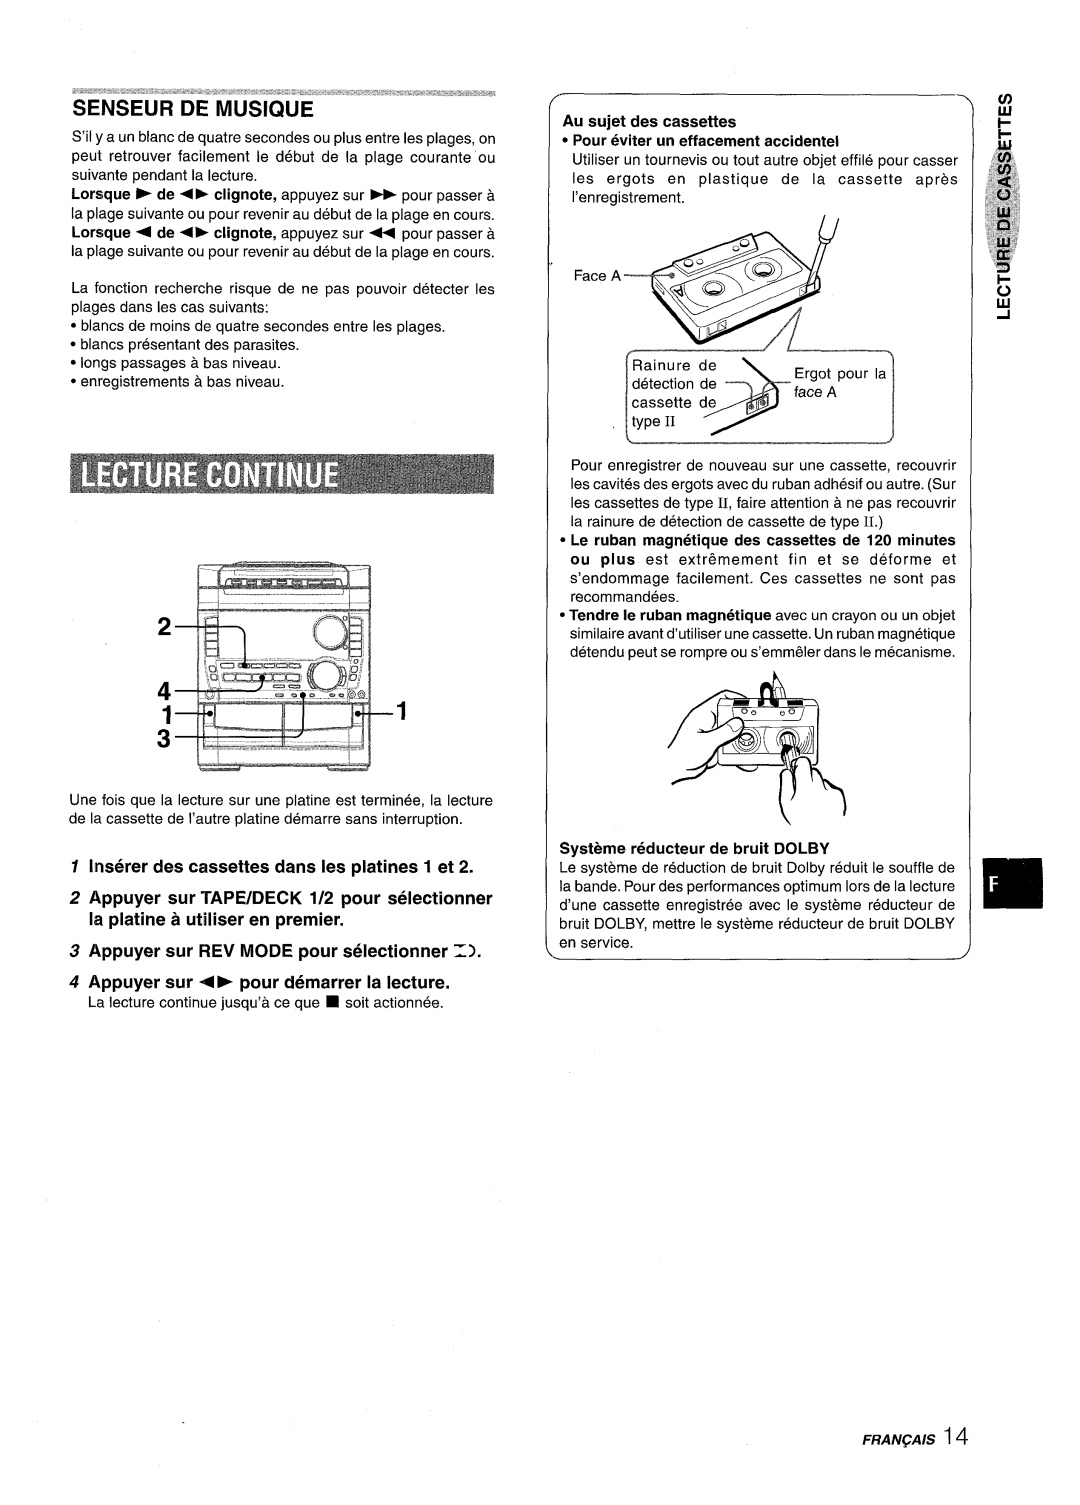 Sony NSX-A959 manual Inserer des cassettes clans Ies platines 1 et, Appuyer sur REV MODE pour selectionner Z 